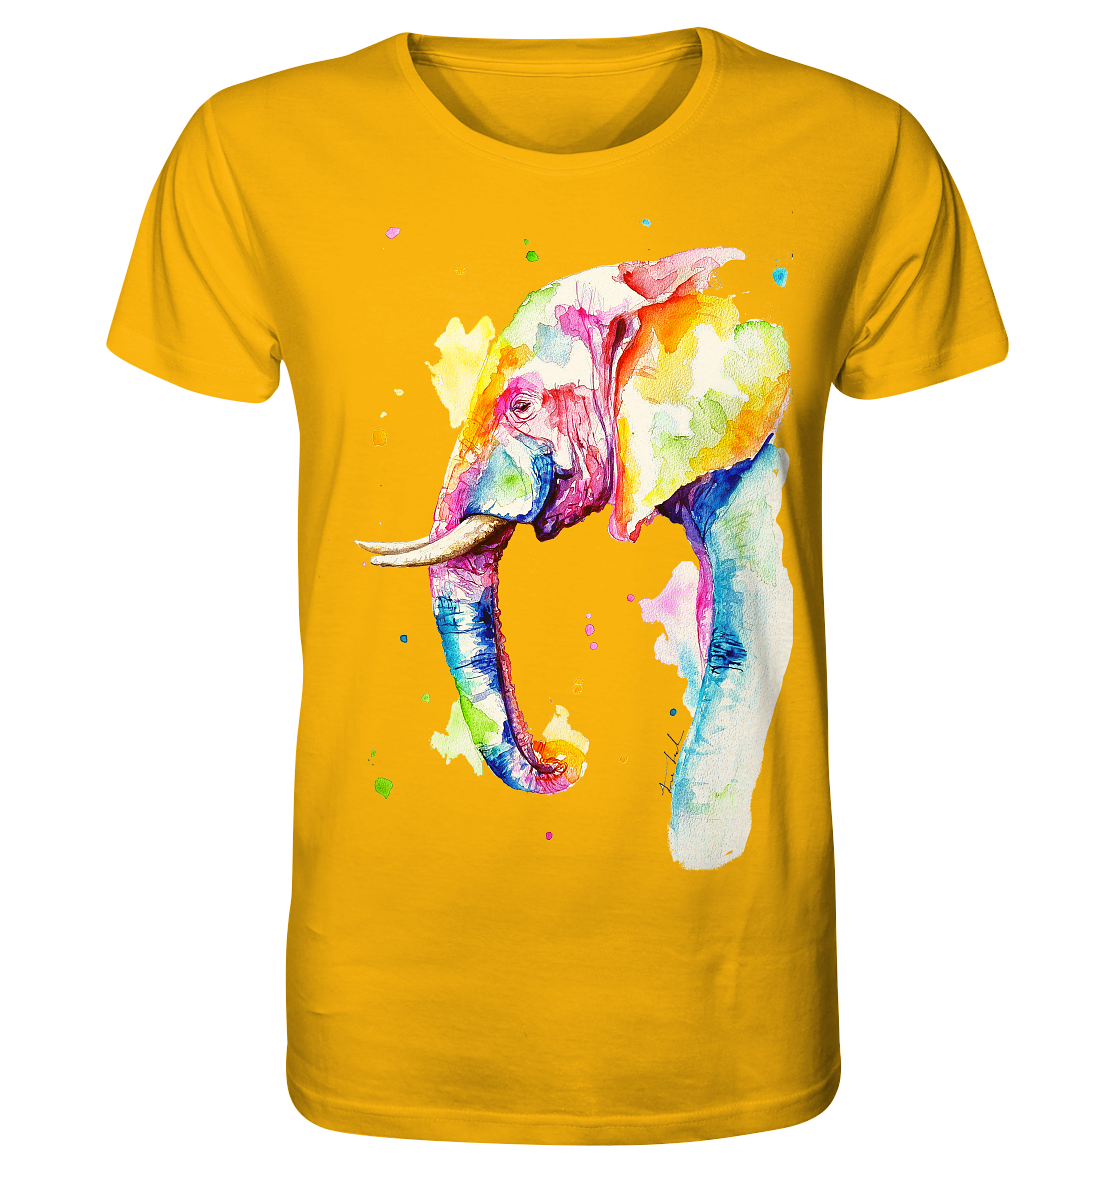 Bunter Elefant - Organic Shirt